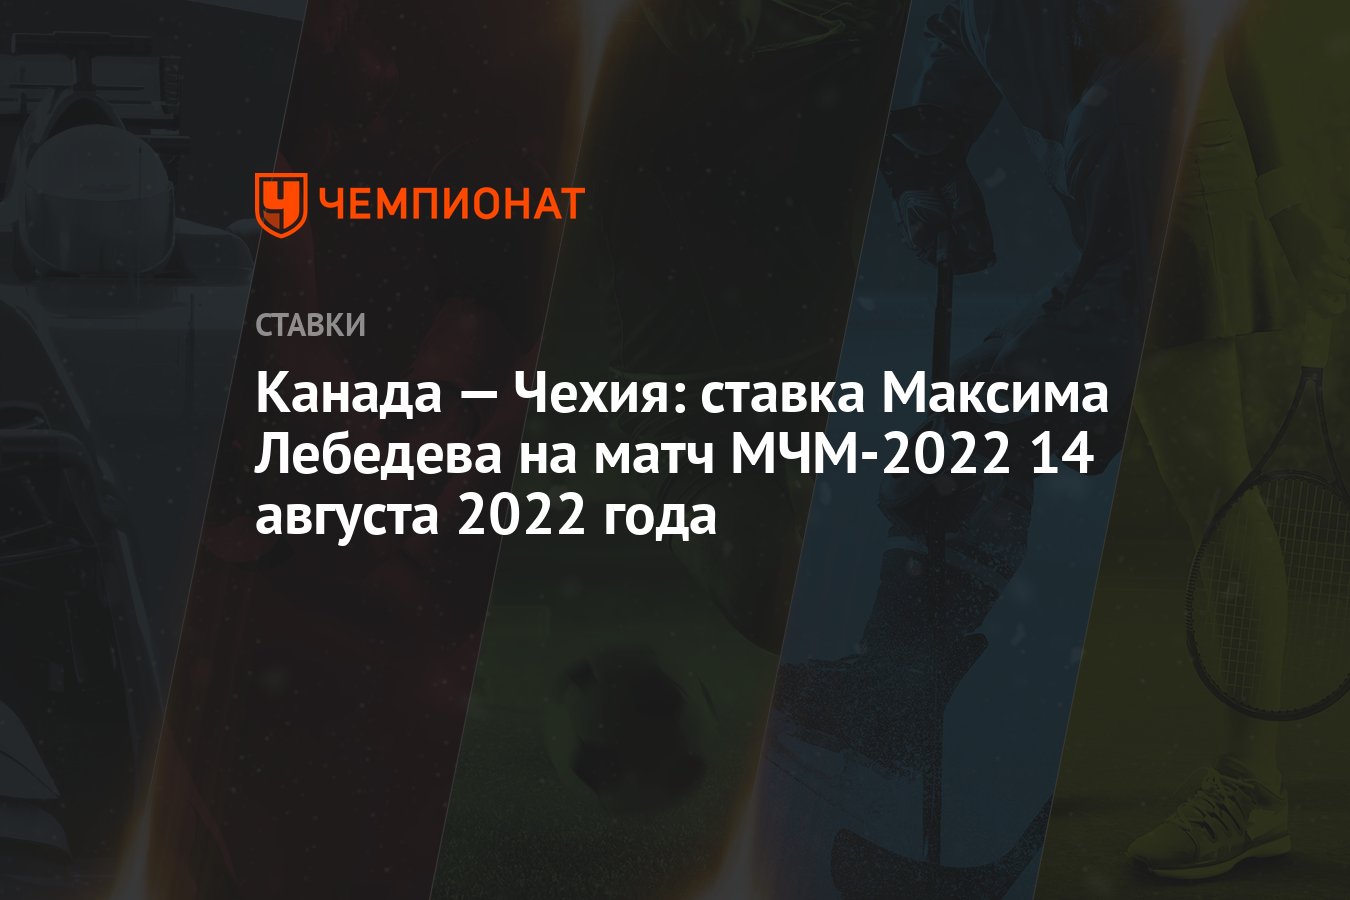 kanada-–-cek-cumhuriyeti:-maxim-lebedev'in-14-agustos-2022'deki-mfm-2022-macina-bahsi